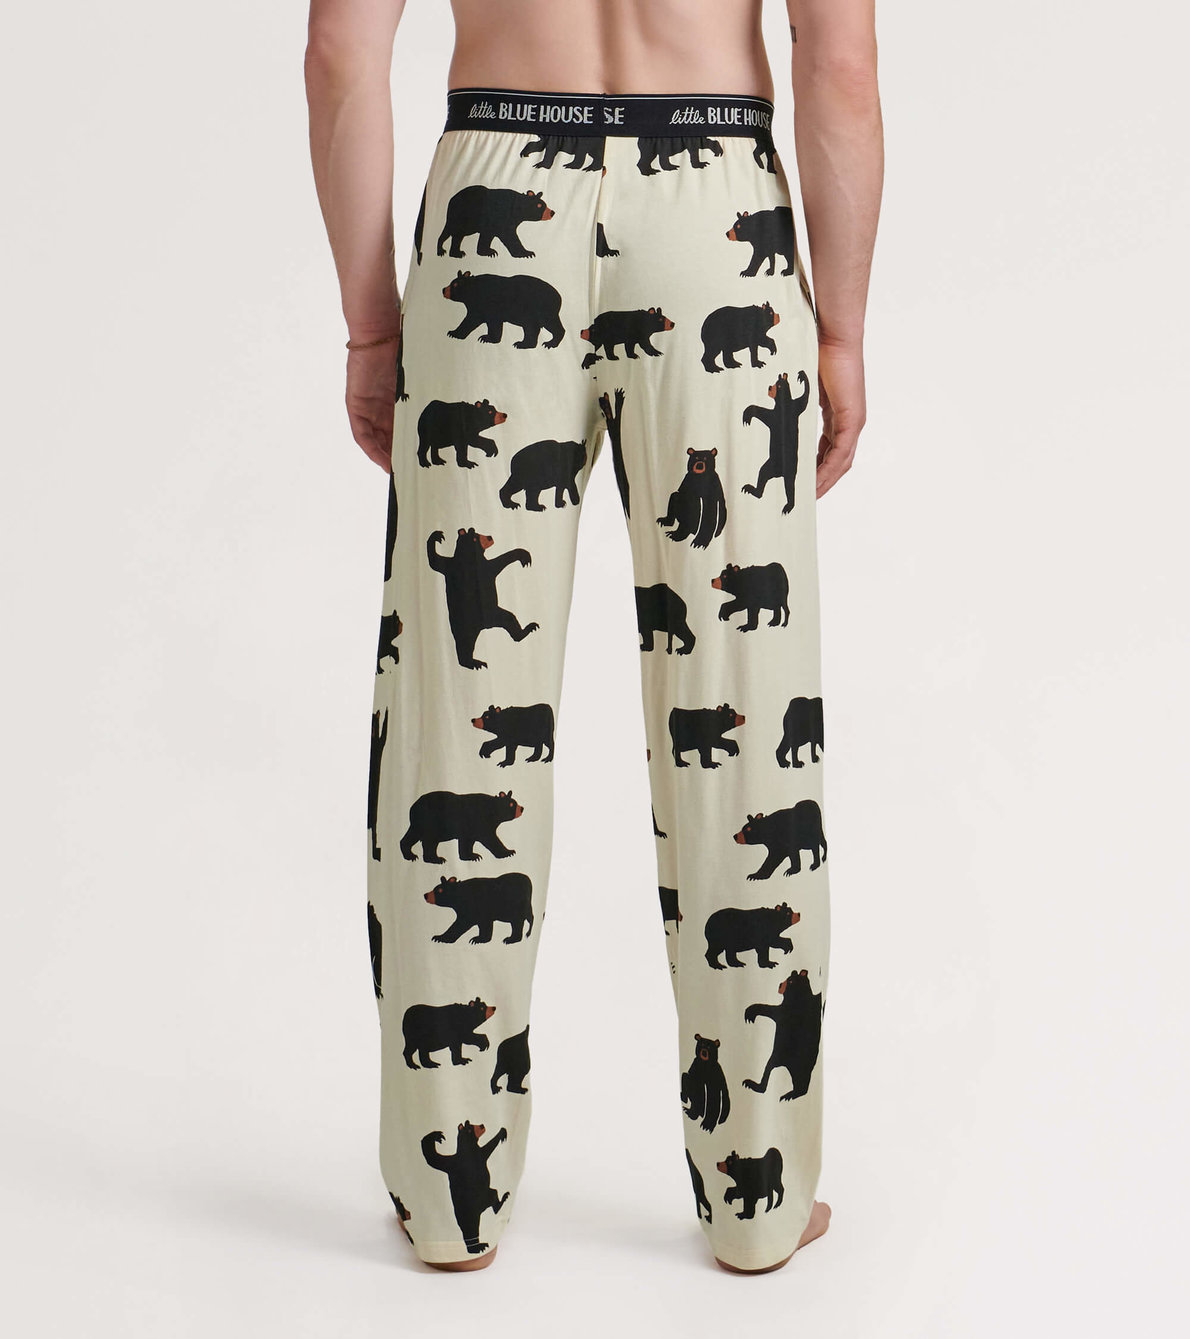 View larger image of Black Bears Men's Jersey Pajama Pants